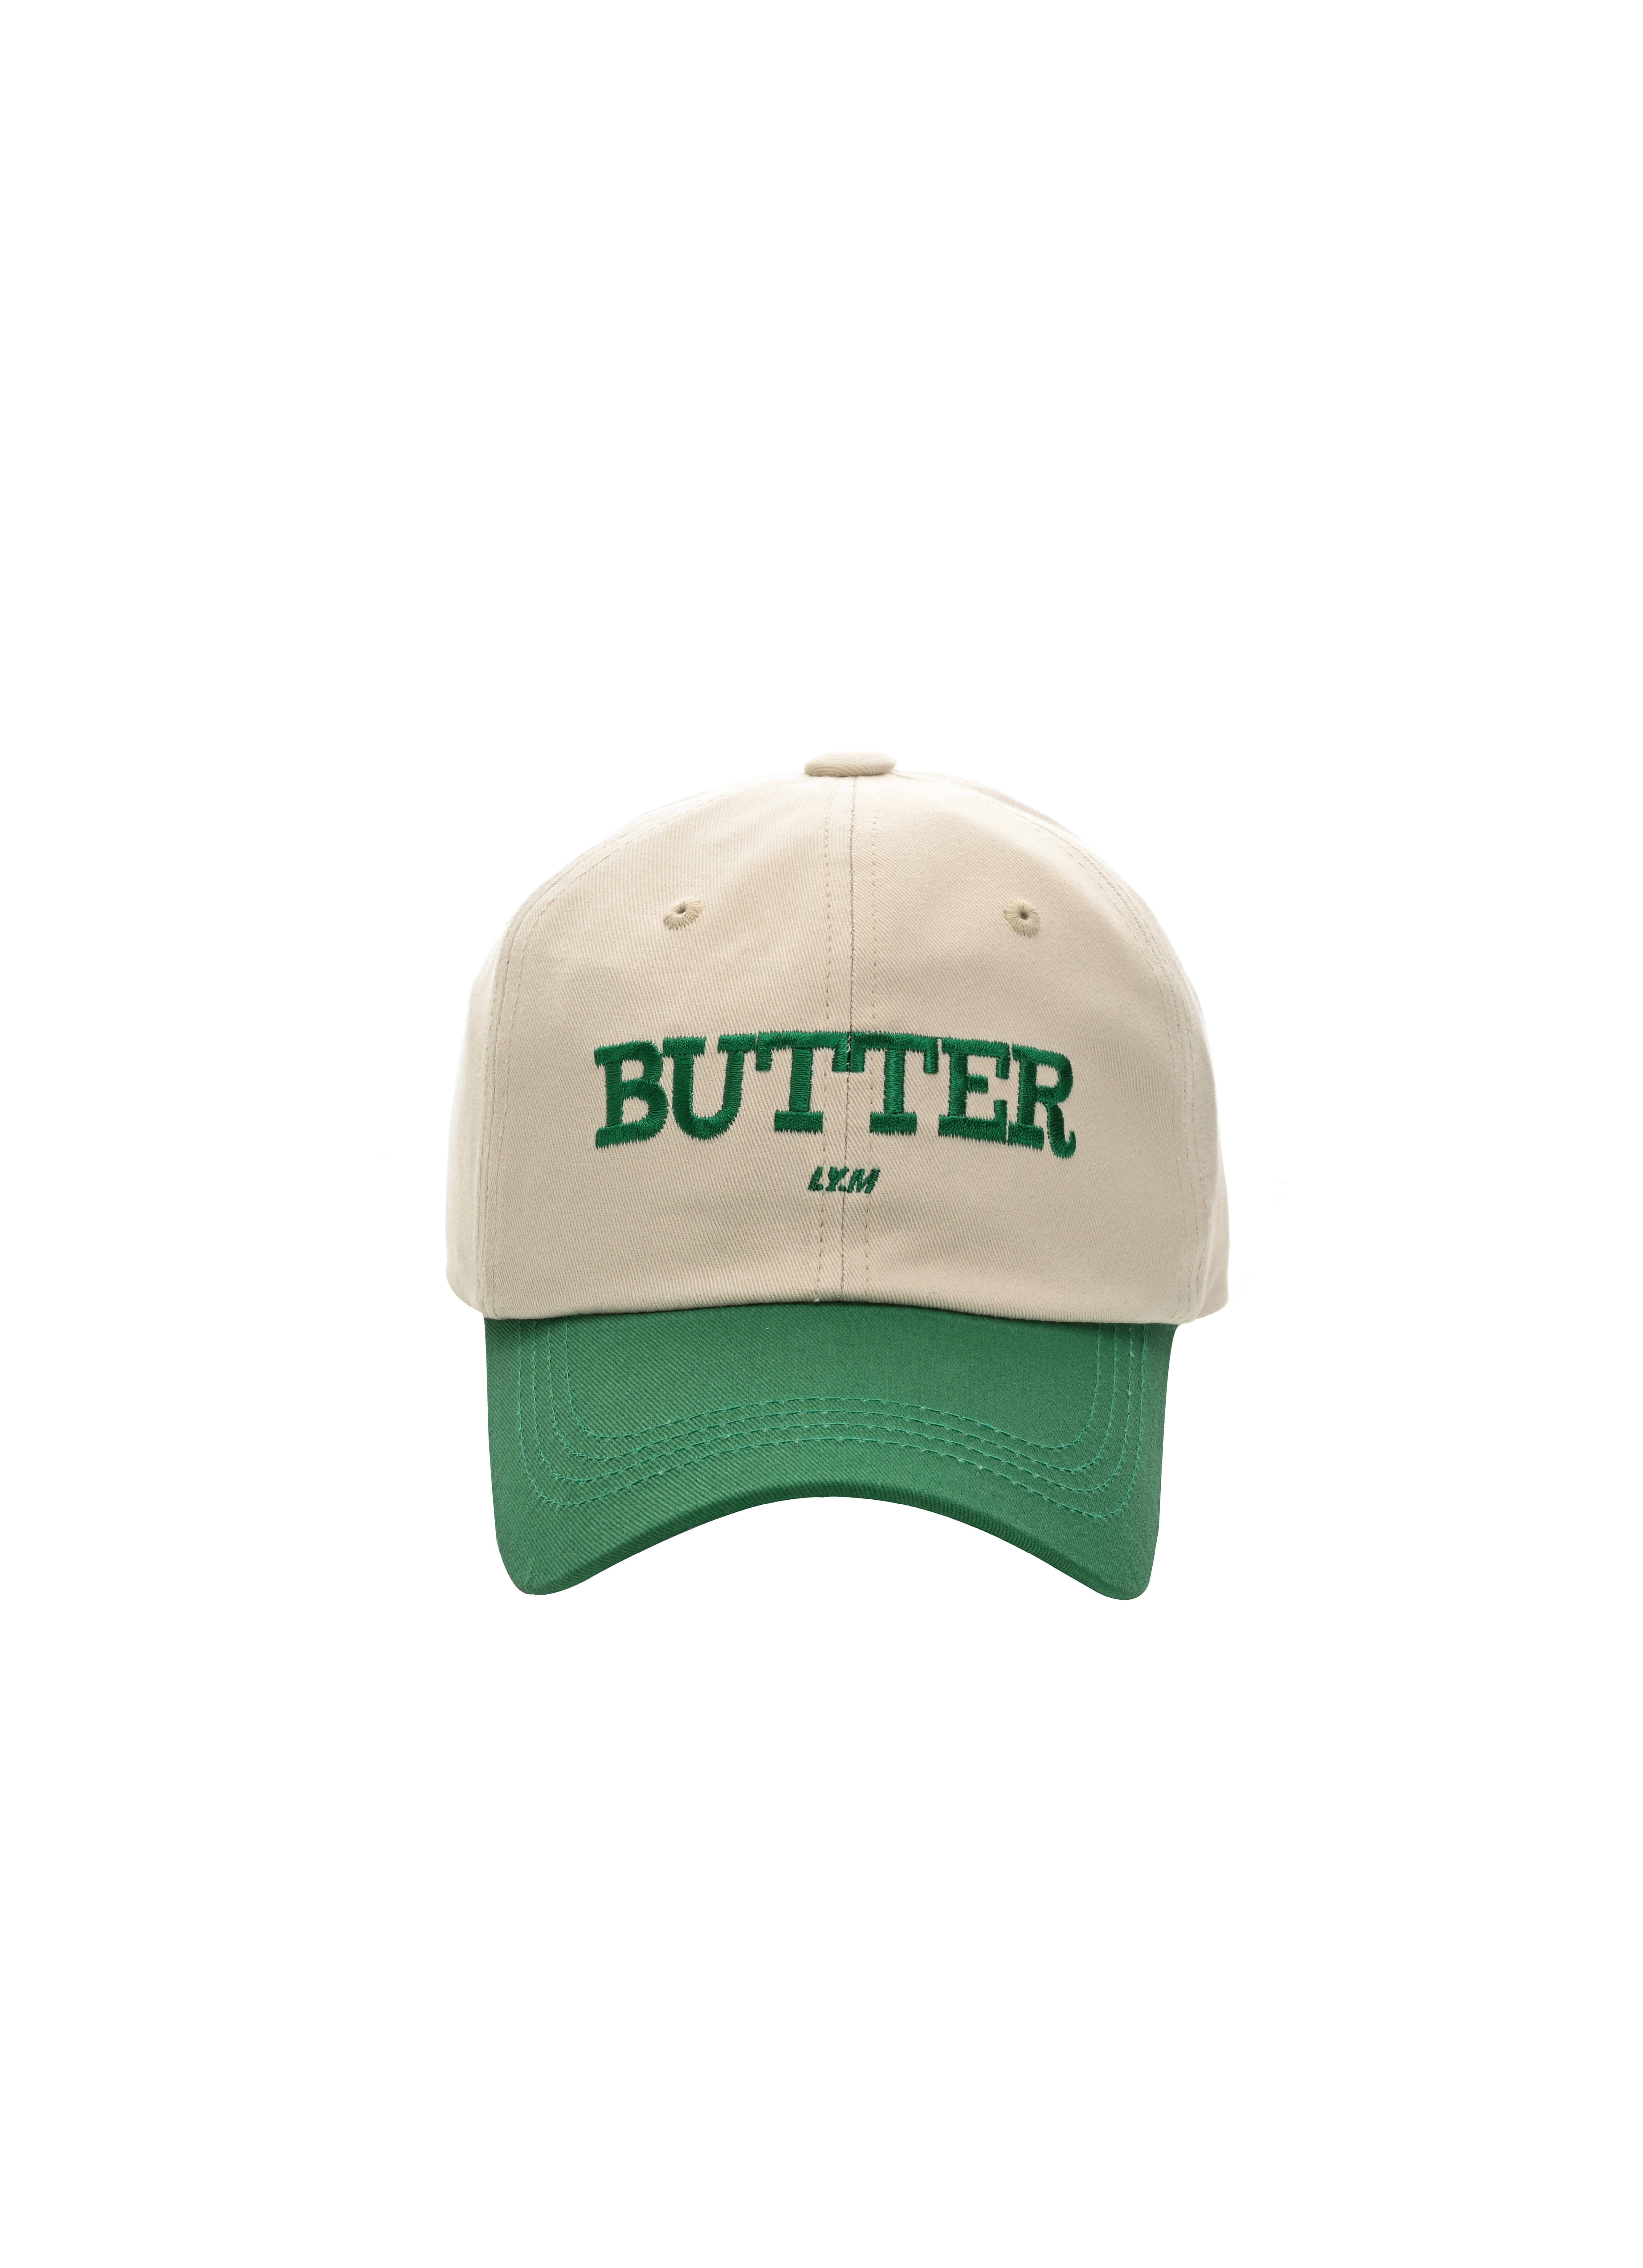 30%--butter cap(beige &amp; green)